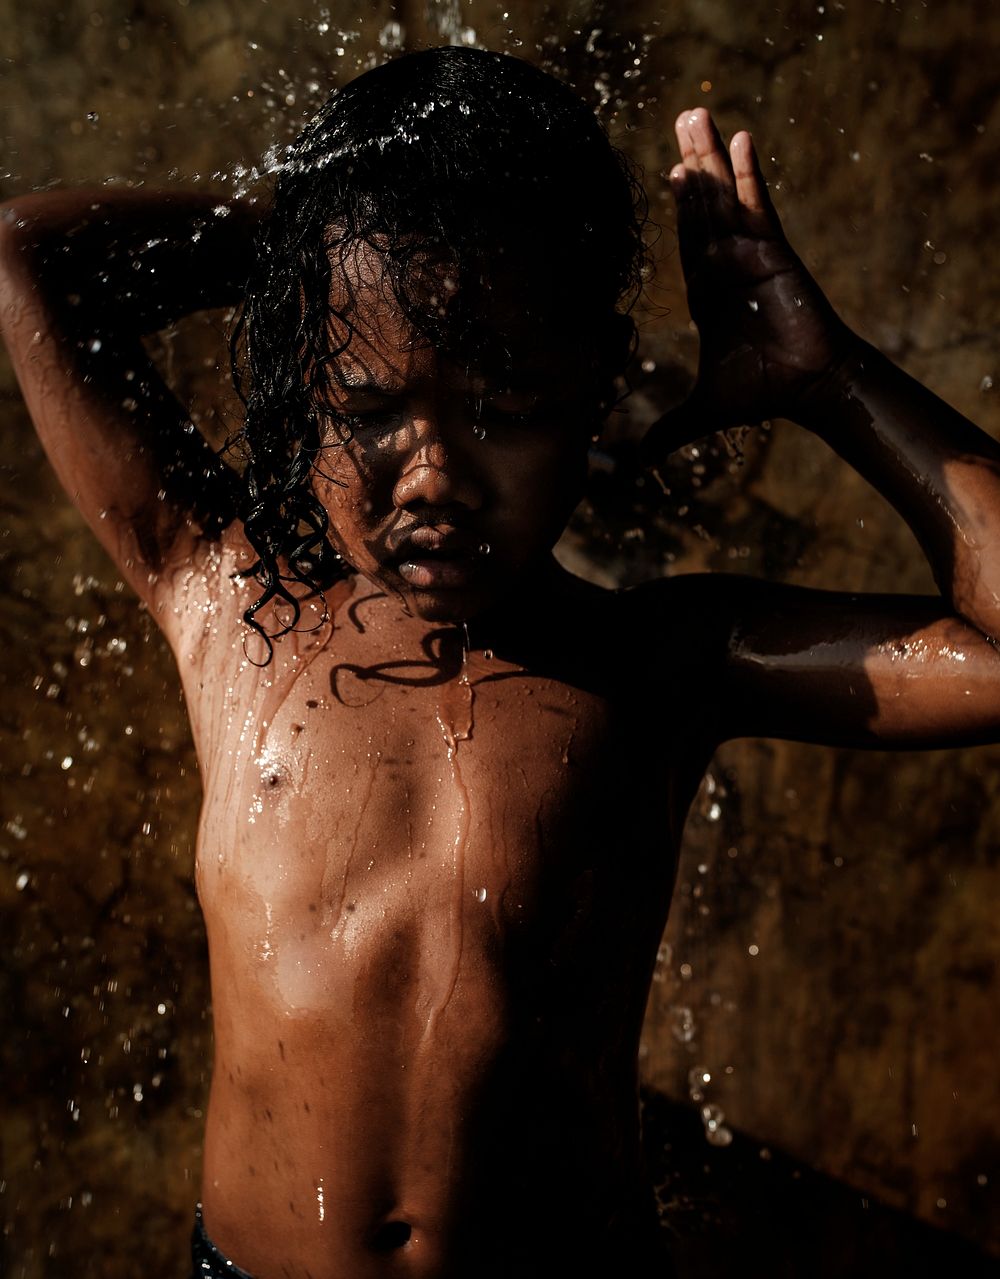 African kid showering in outdoor shower